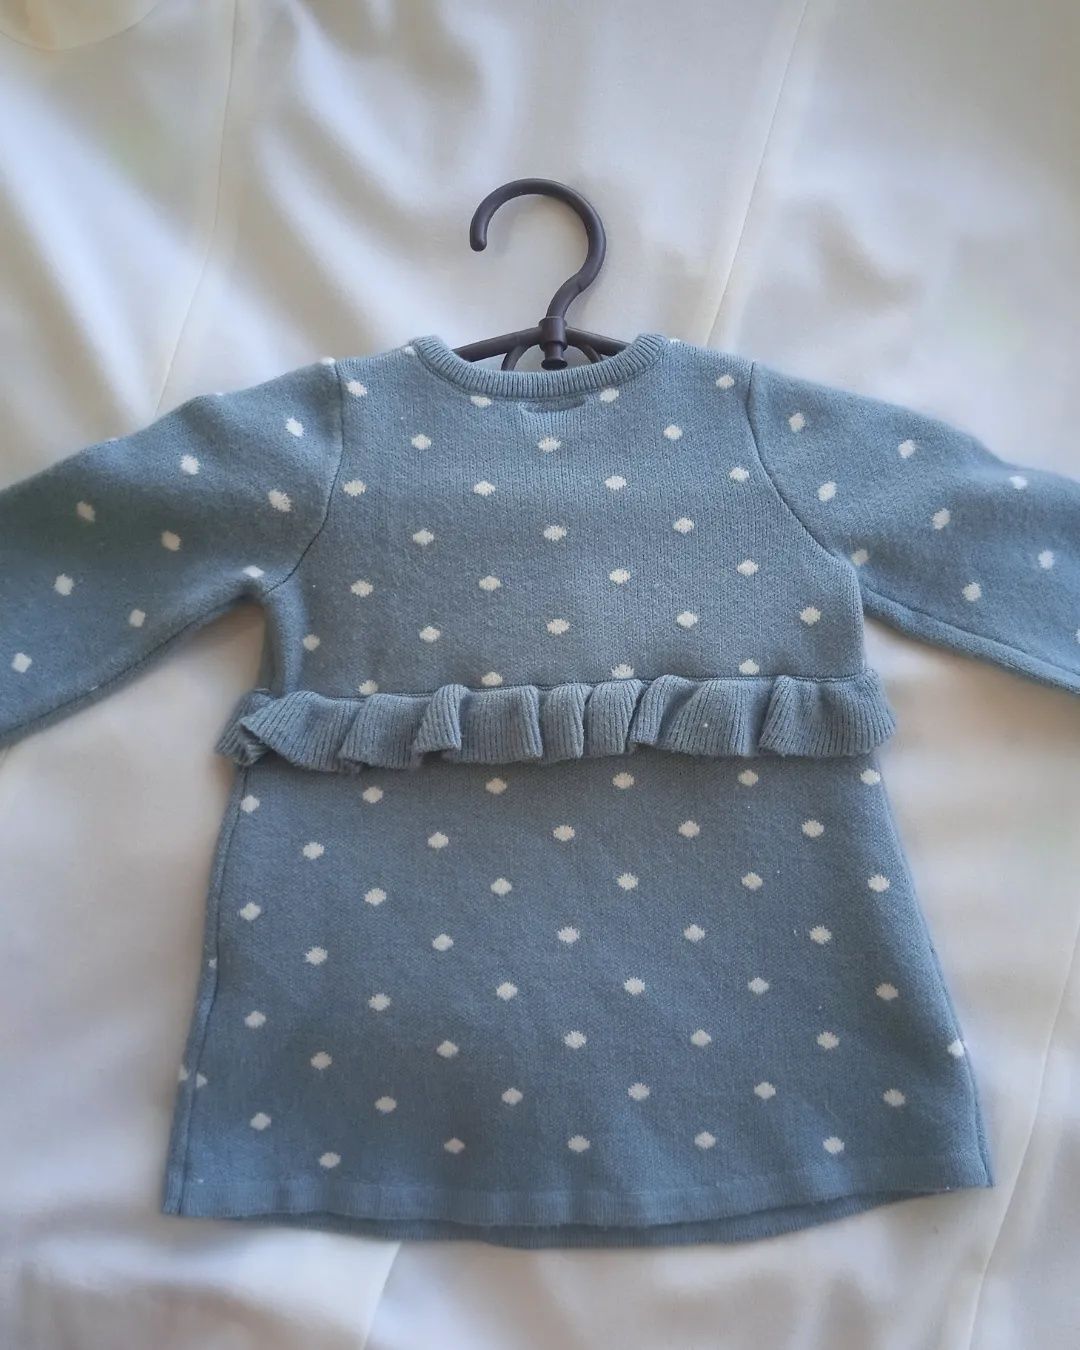 Тёплое платье для новорождённой девочки 3-6 месяцев рост 68 см